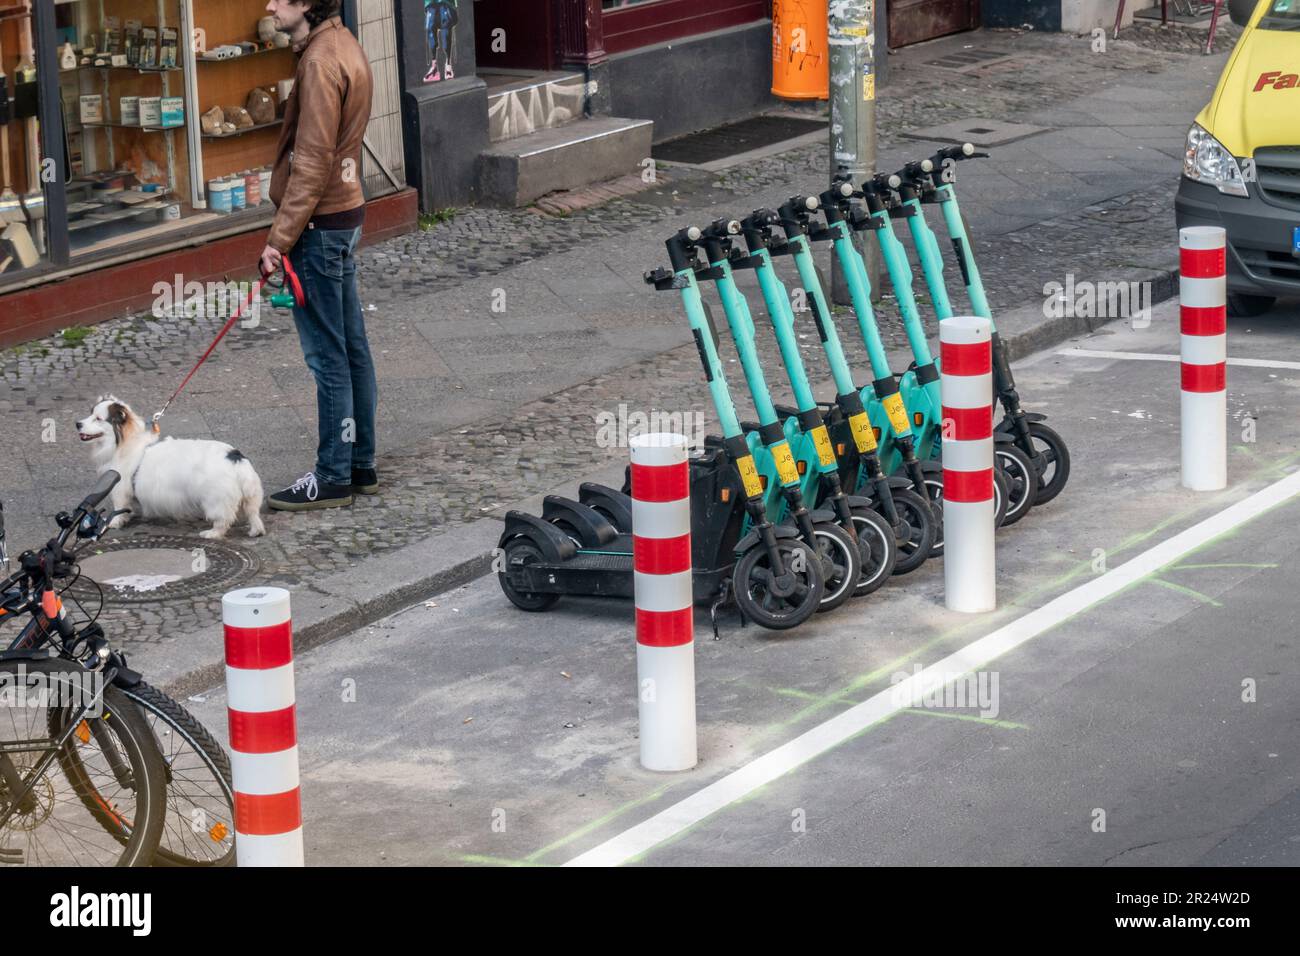 E-Roller morgens noch ordentlich aufgereiht in Parkzone, Oranienstrasse, Kreuzberg , Berlin Stock Photo